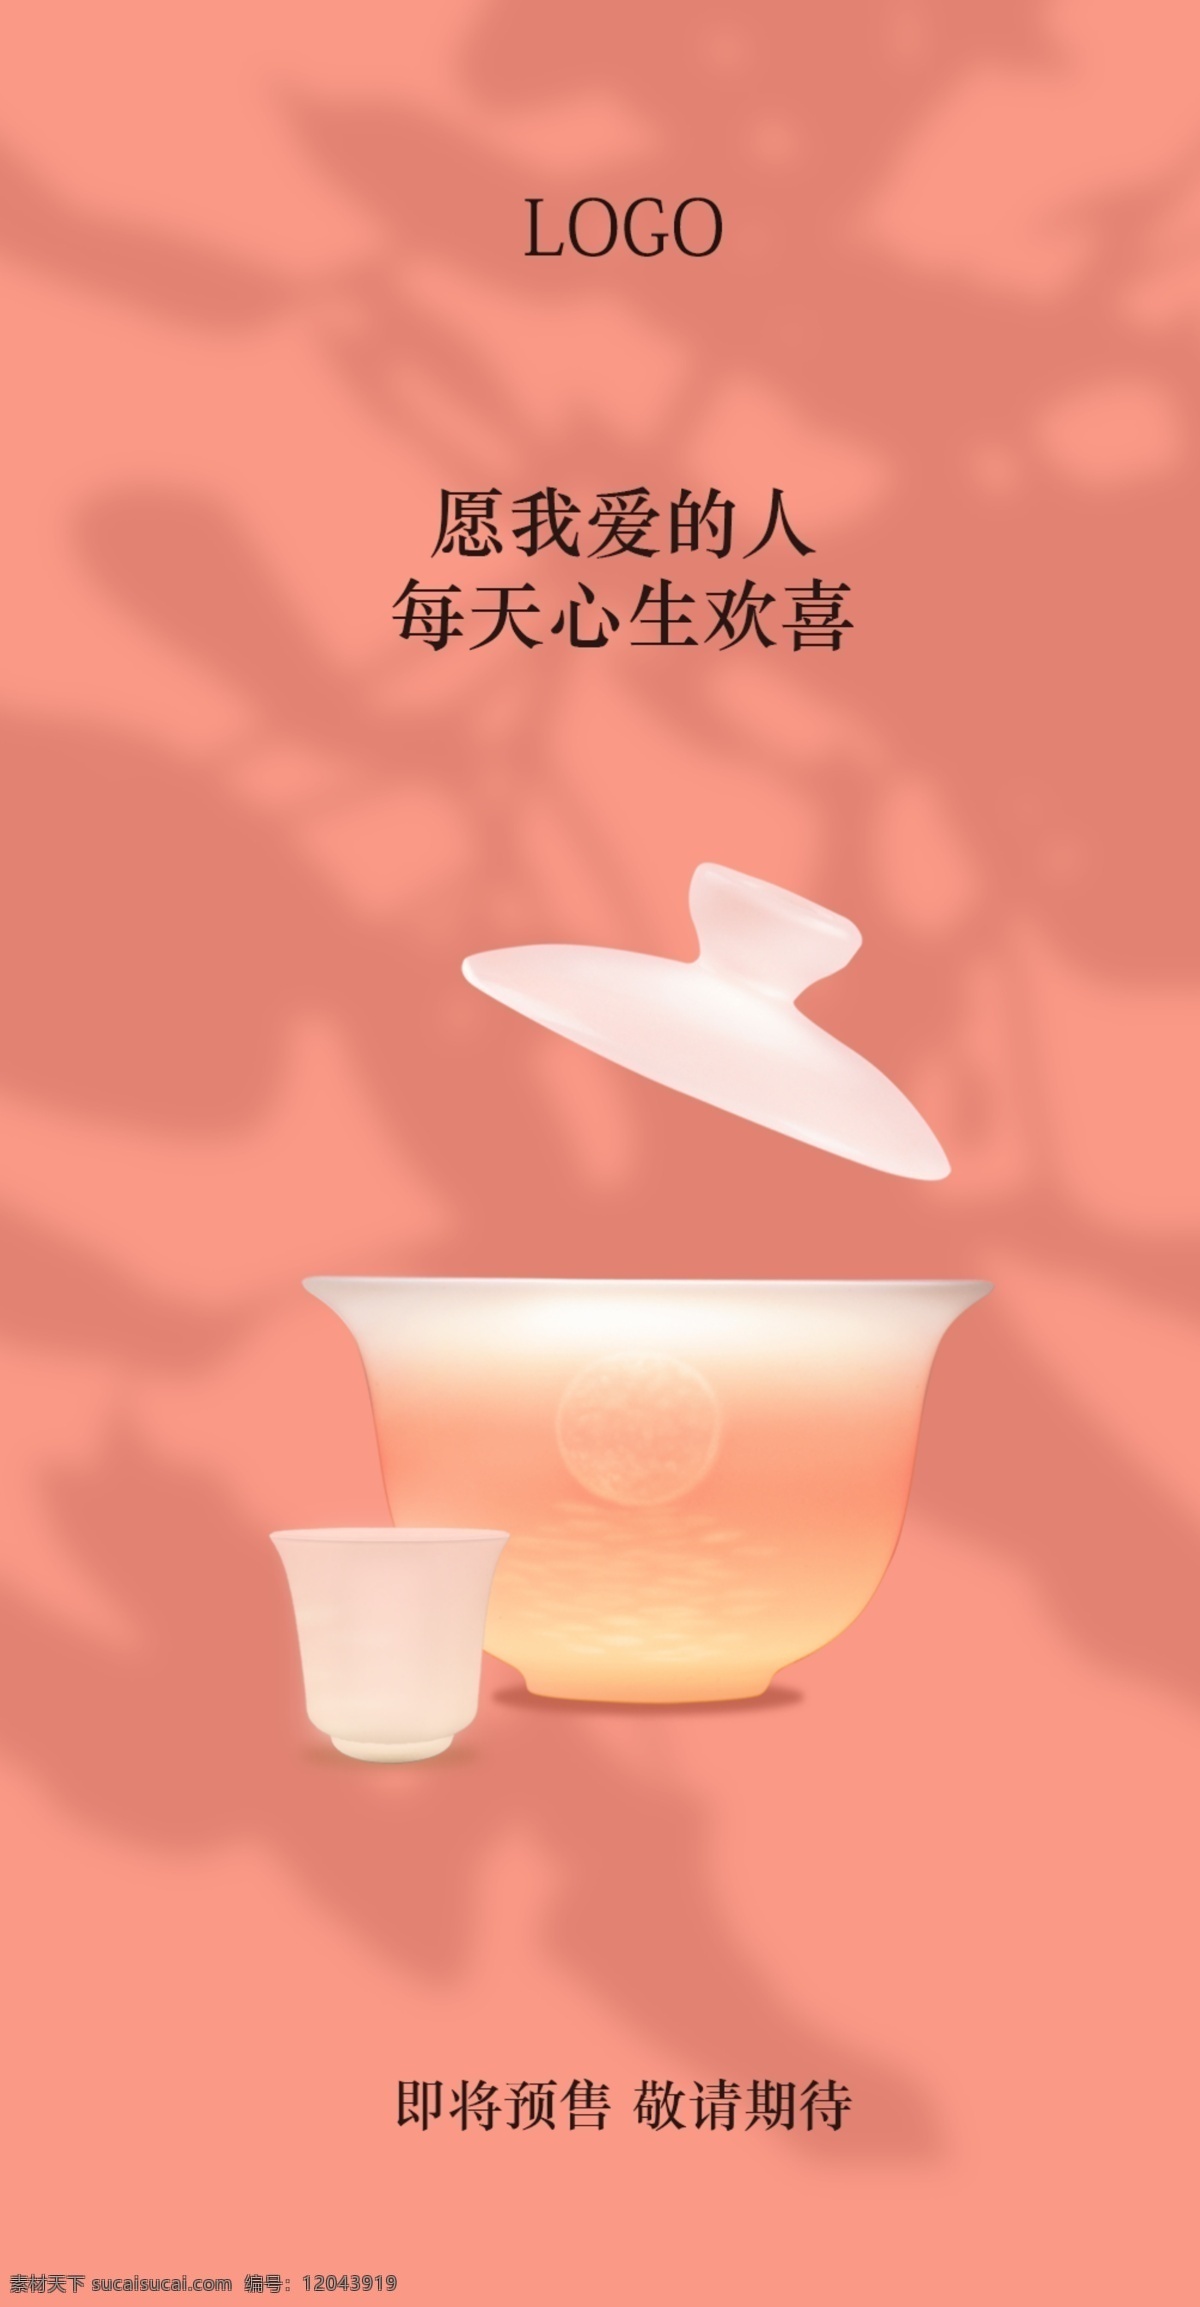 茶具 茶杯 预告 海报 商业海报 粉色 高端 简约 招贴设计